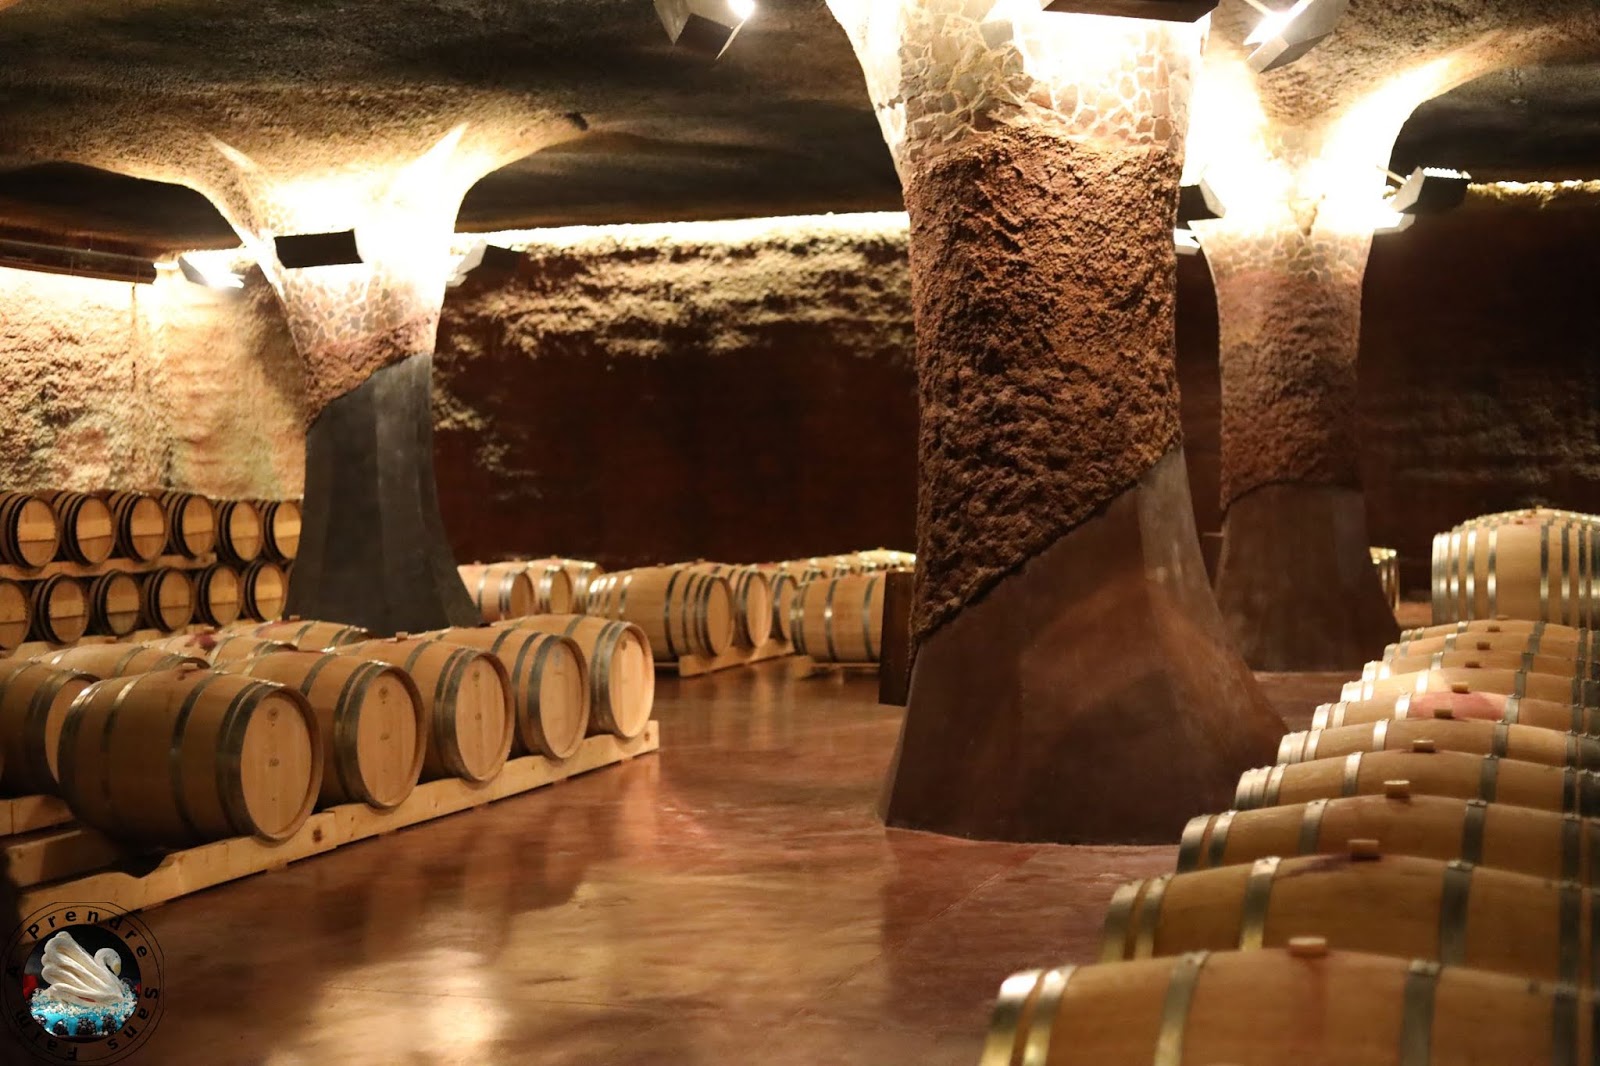 Visite et dégustations de vins à Perinet - Priorat